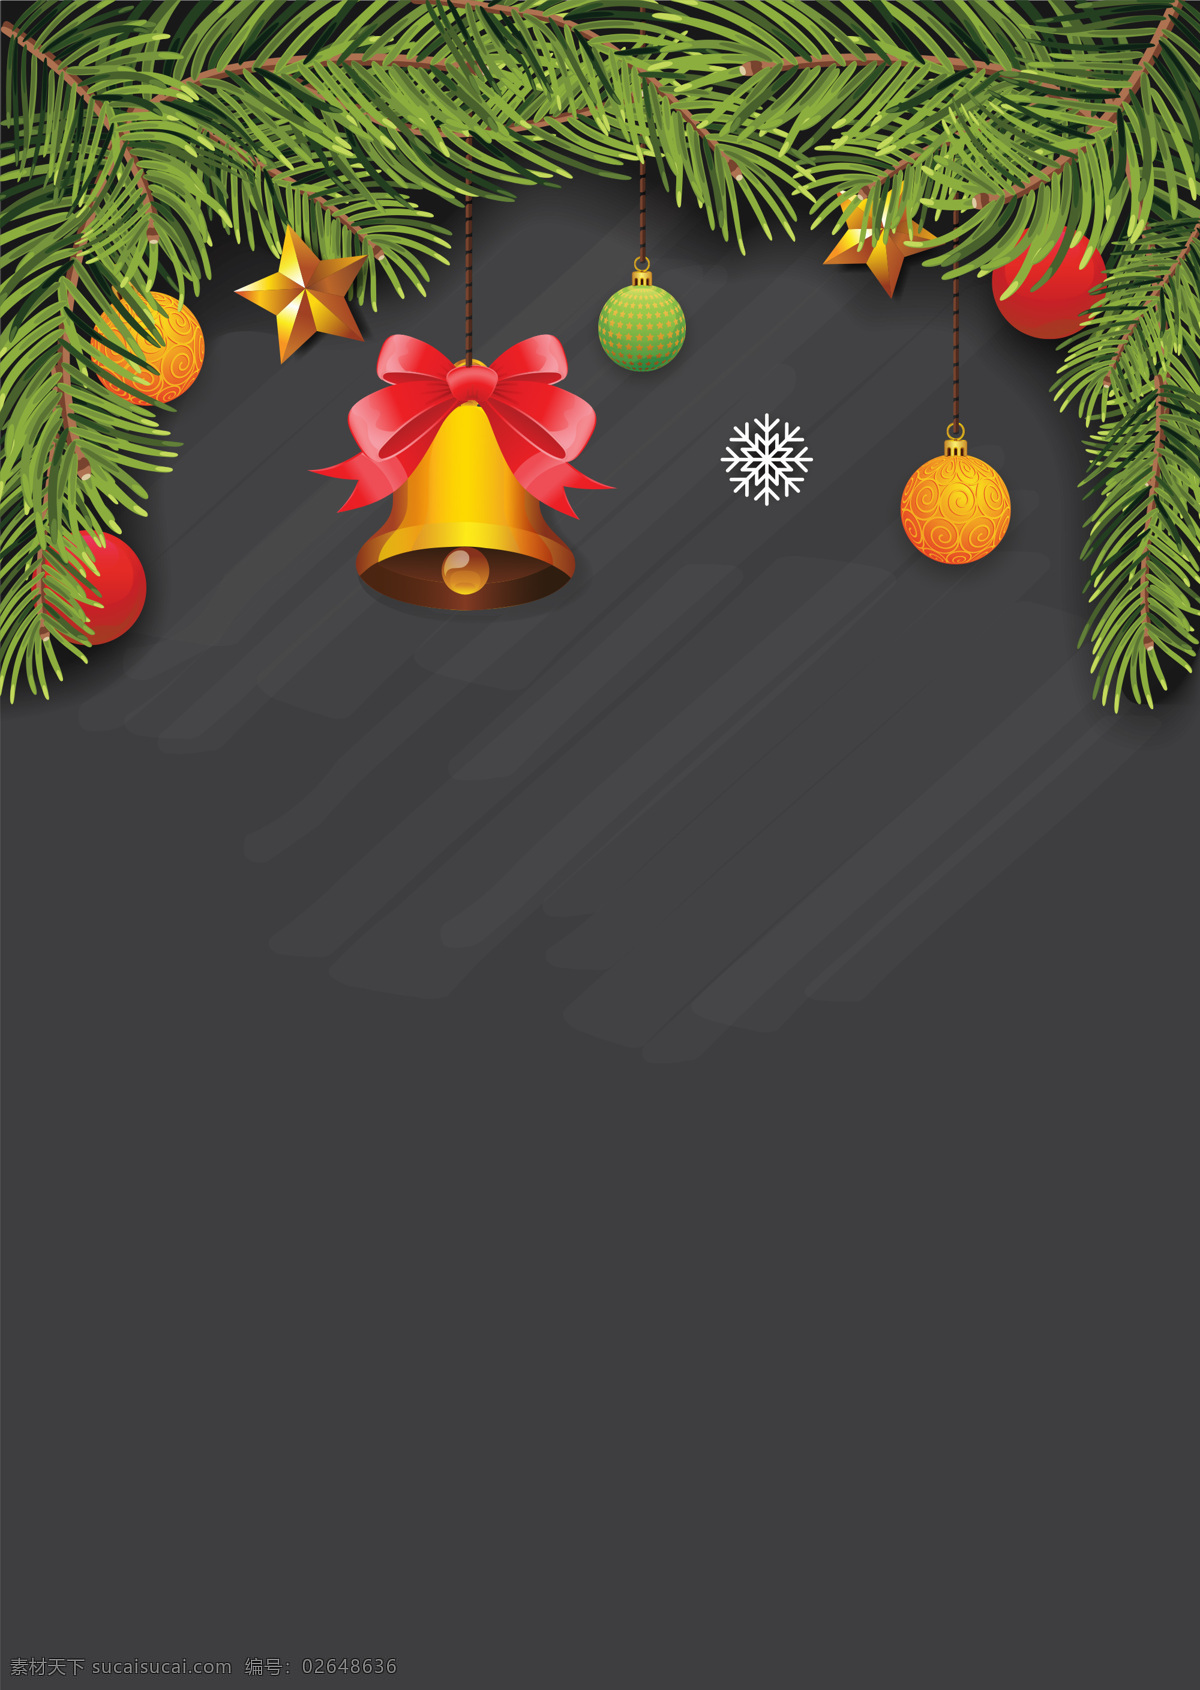 创意 个性 黑色 圣诞节 背景 彩球 卡通 铃铛 圣诞 手绘 树叶 星星 雪花 质感